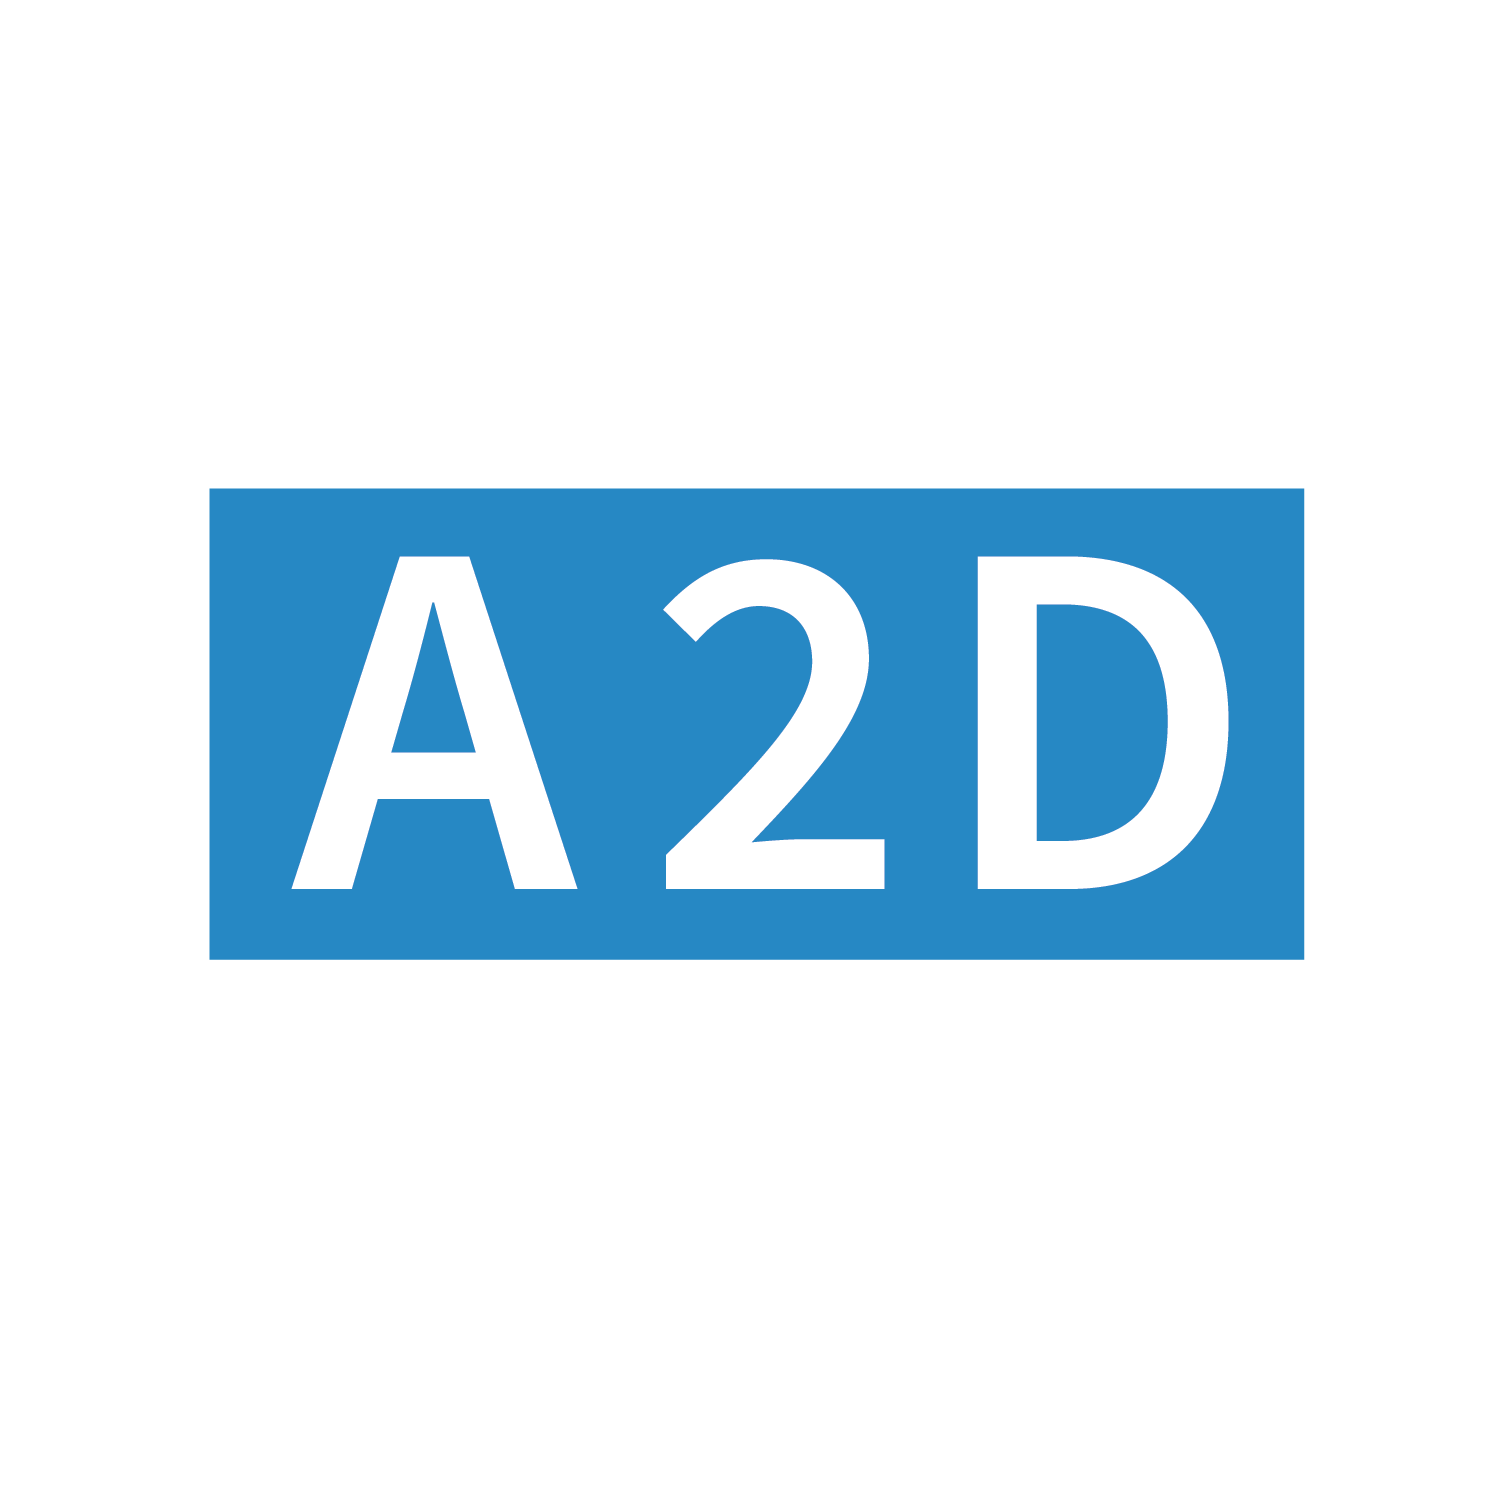 A2D Solutions